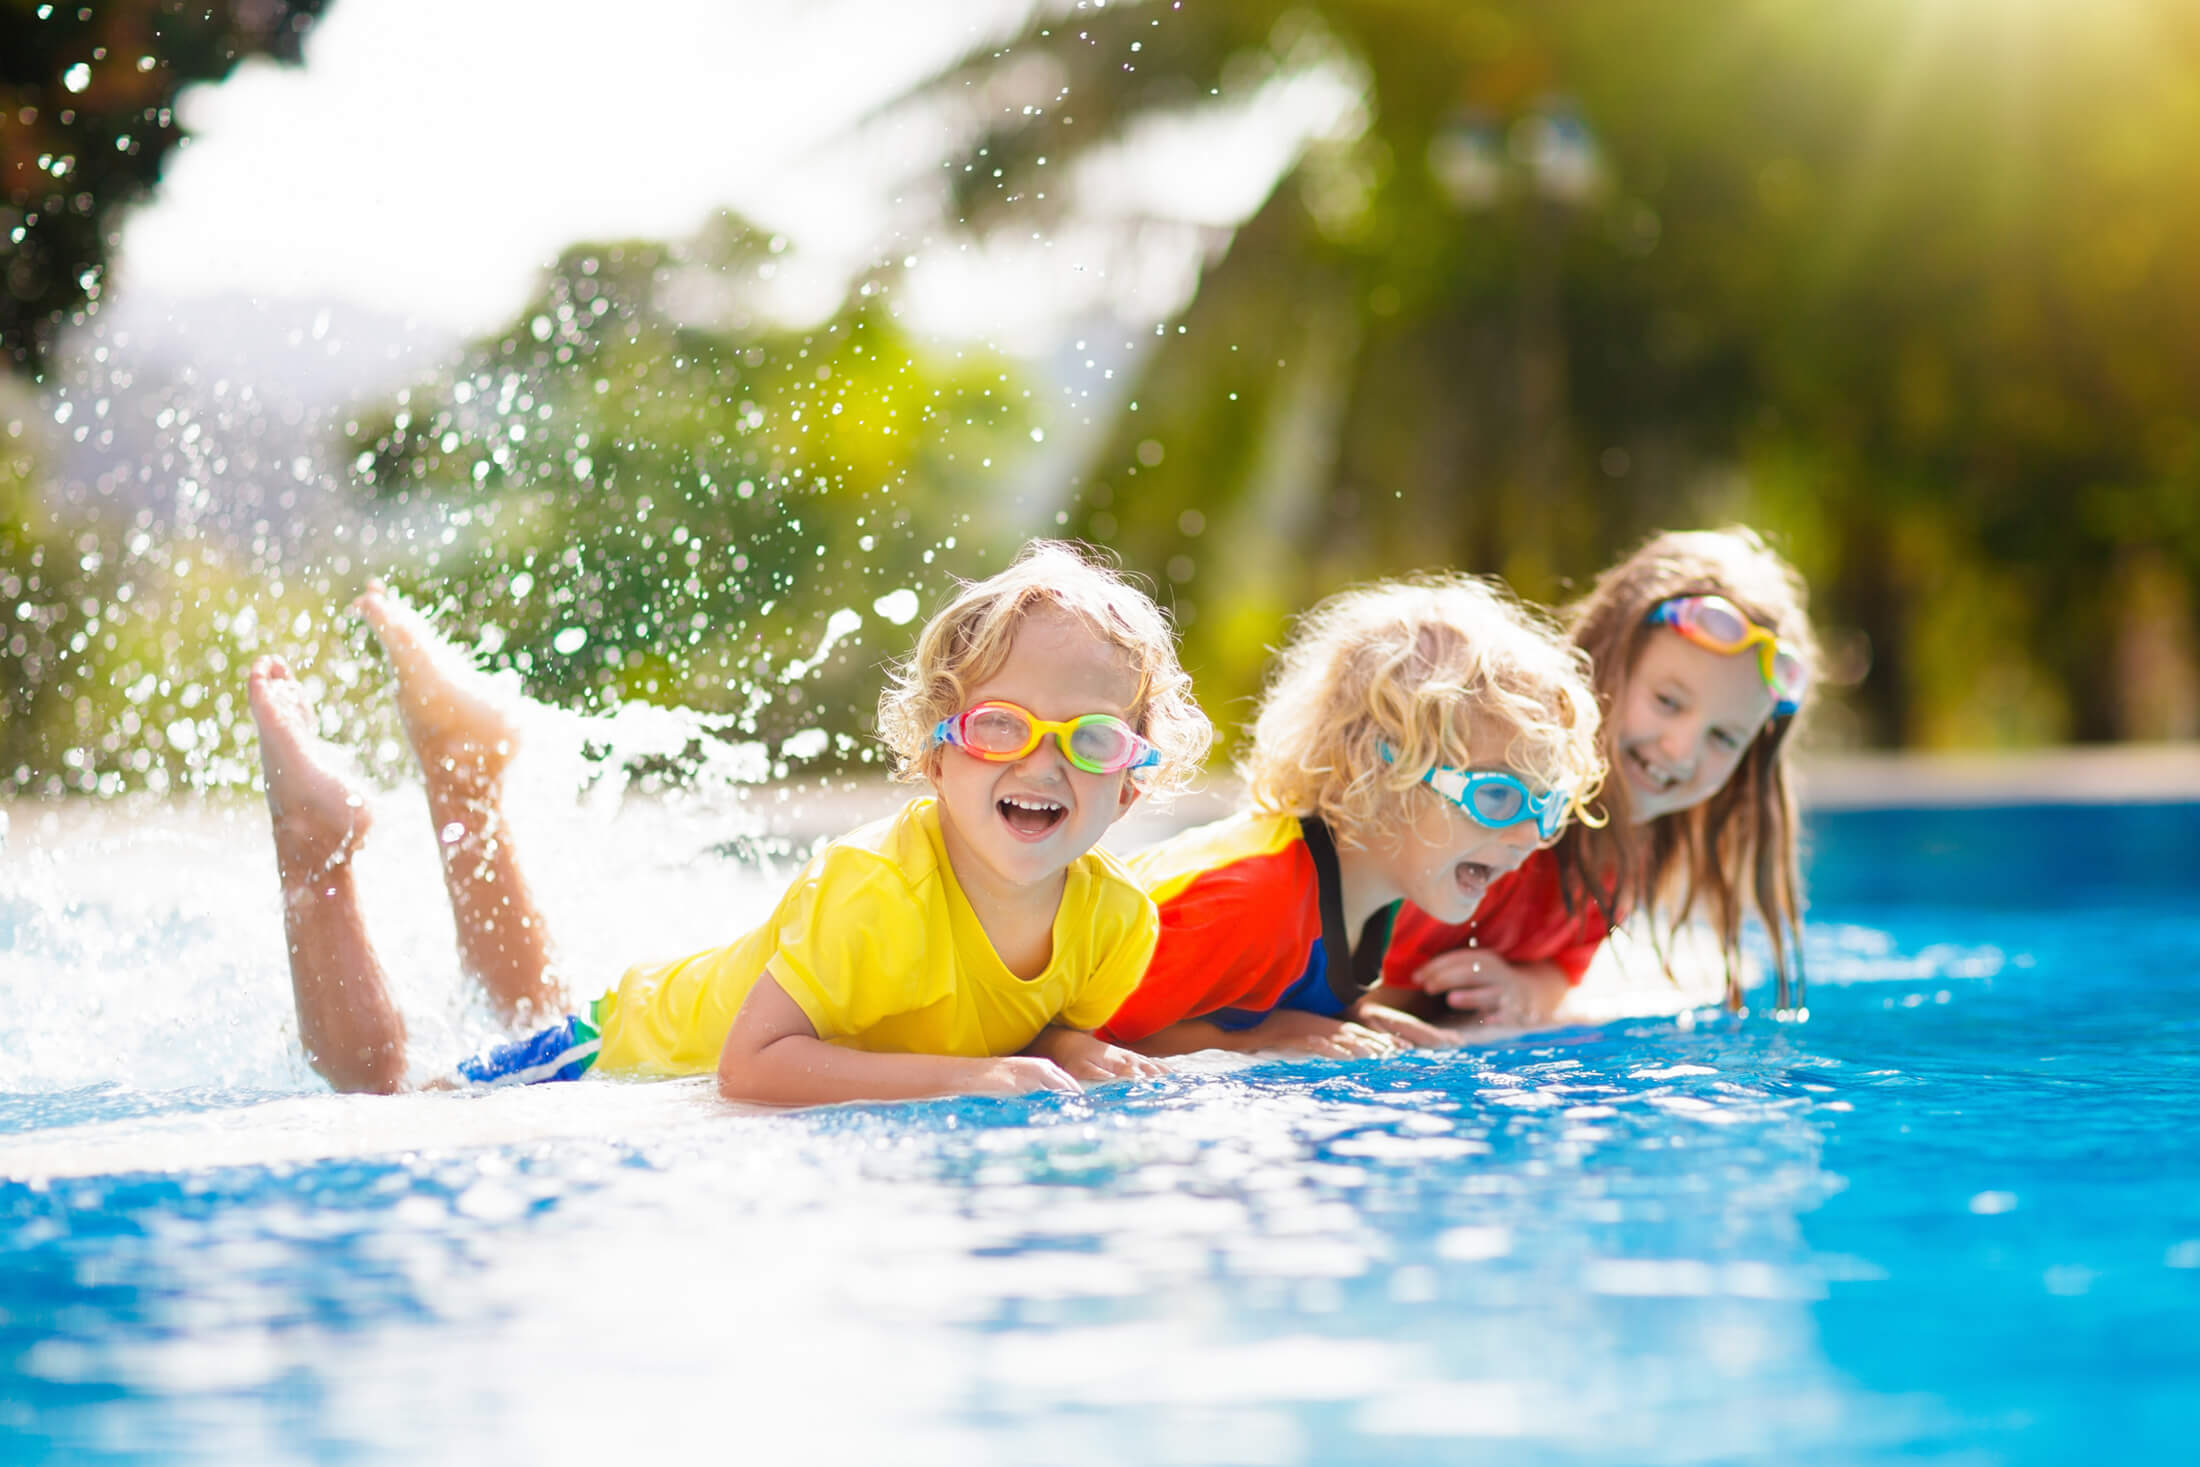 Kids splashing in pool